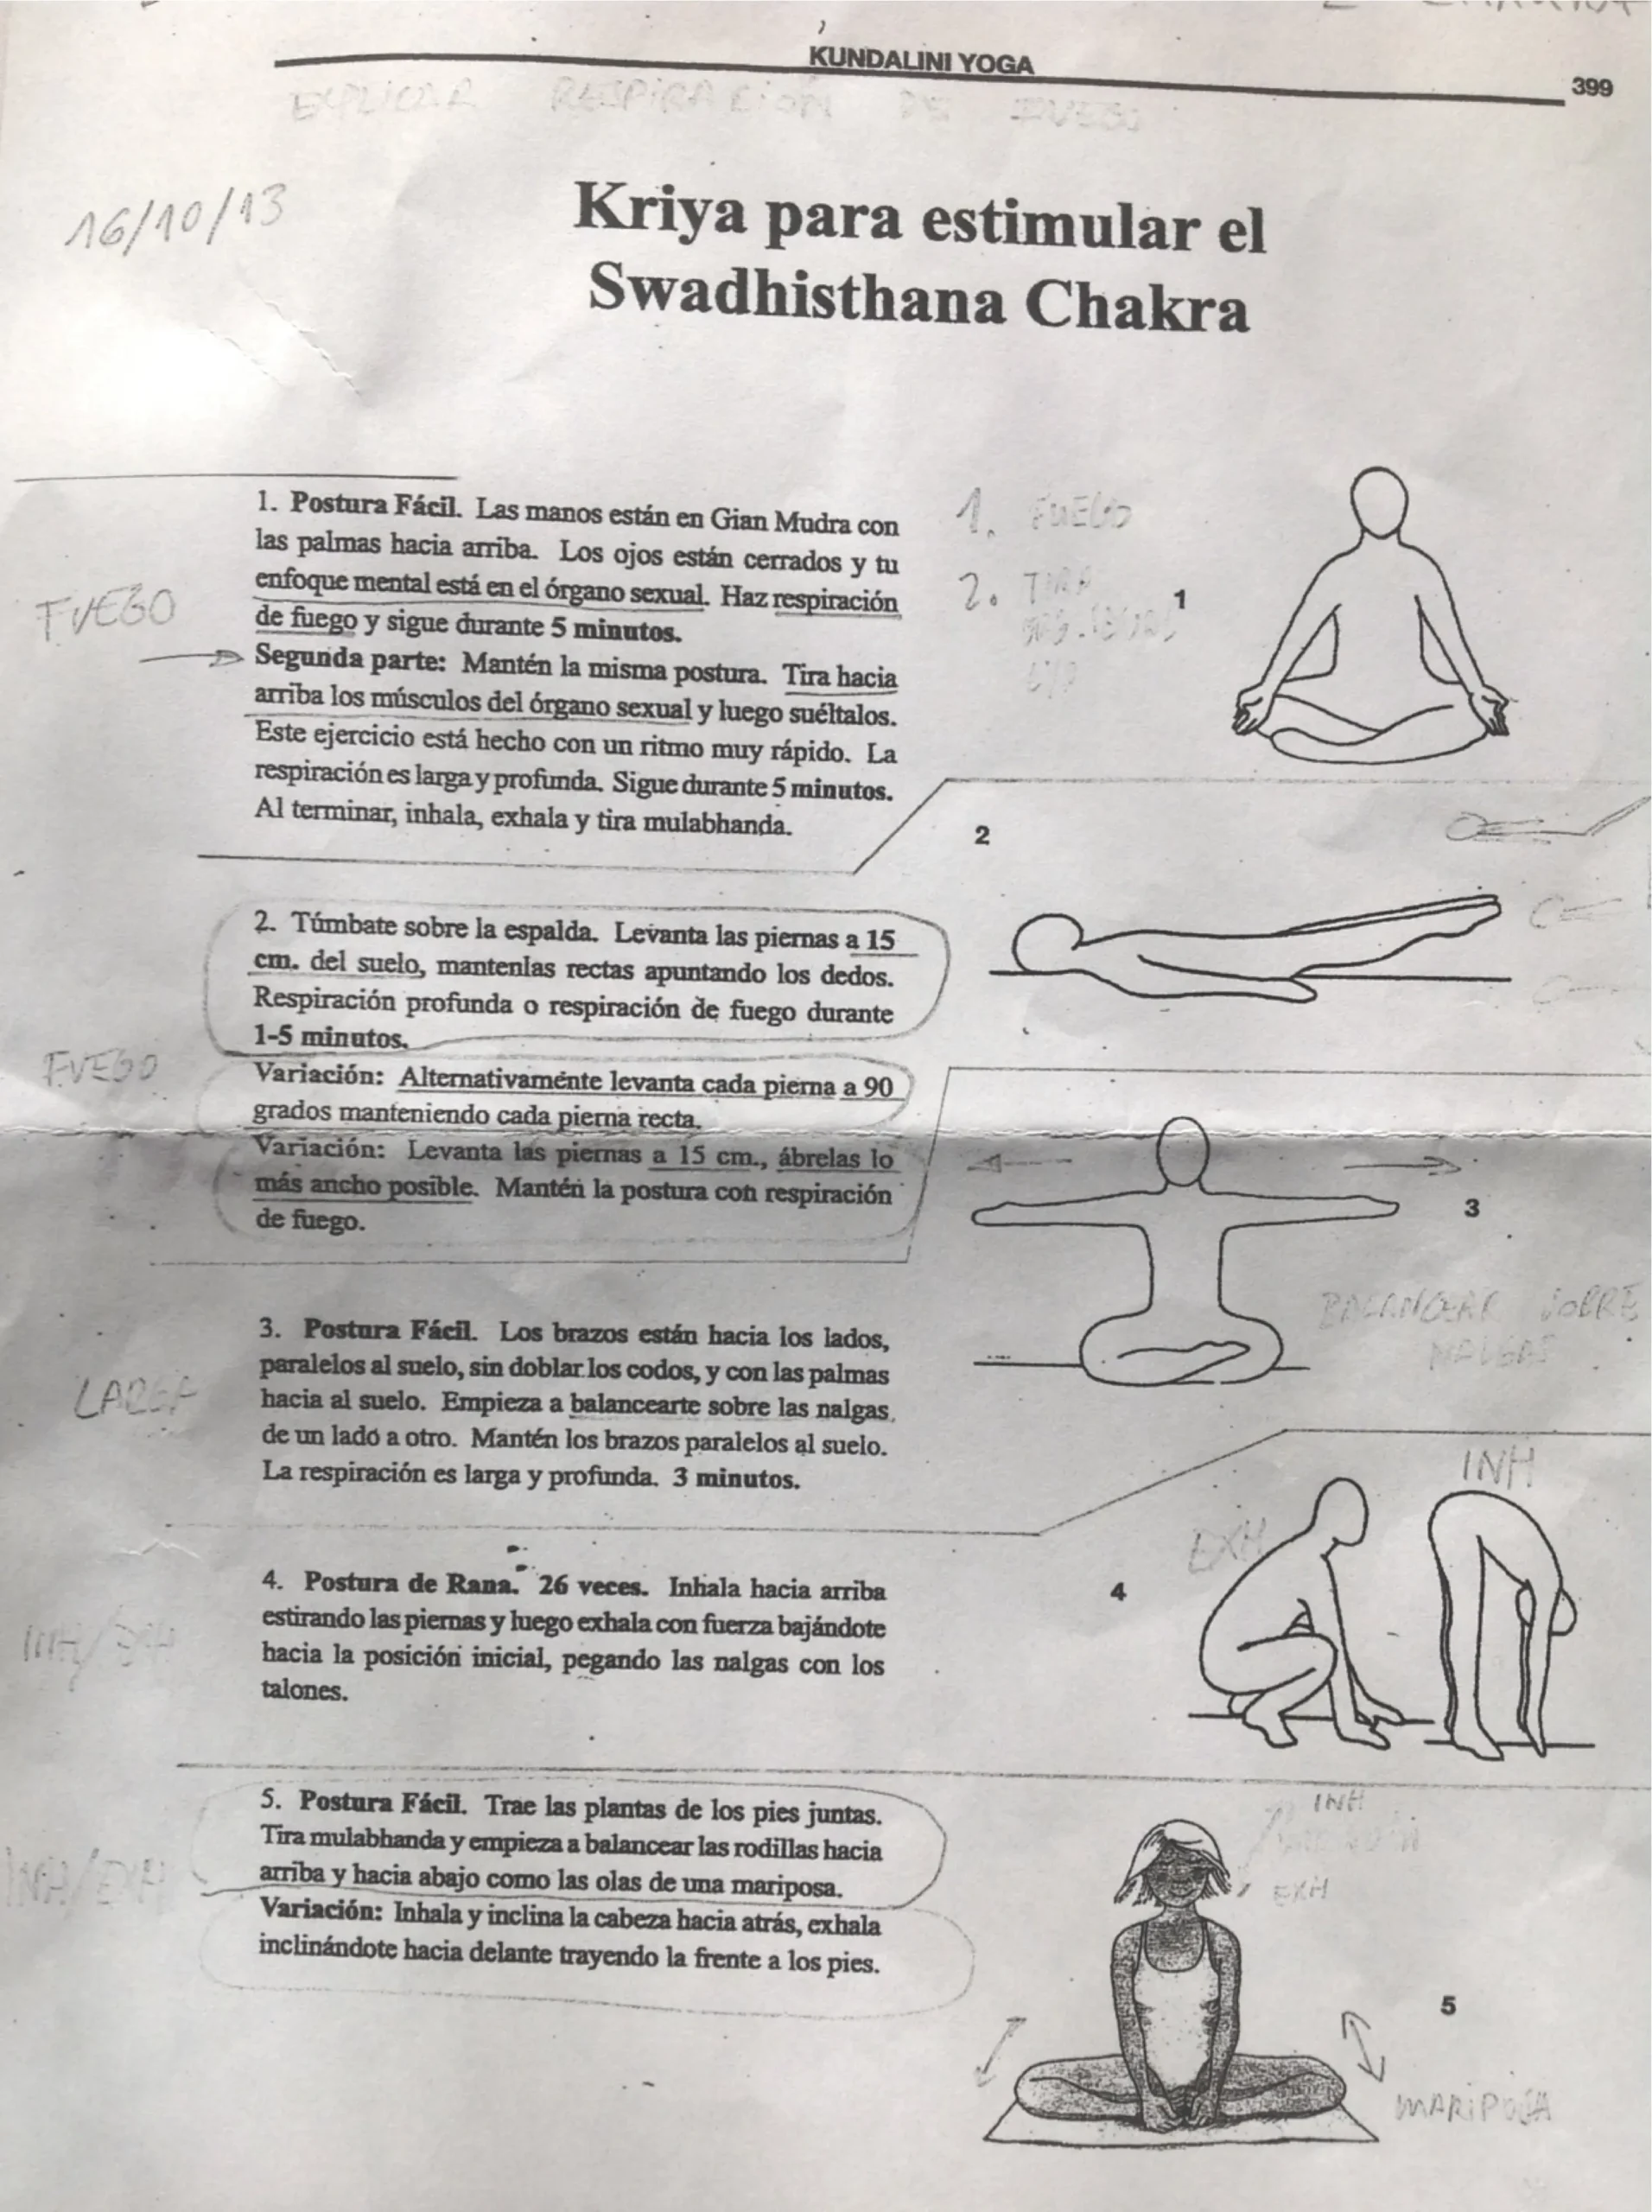 segundo chakra kundalini yoga - Qué animal representa el segundo chakra